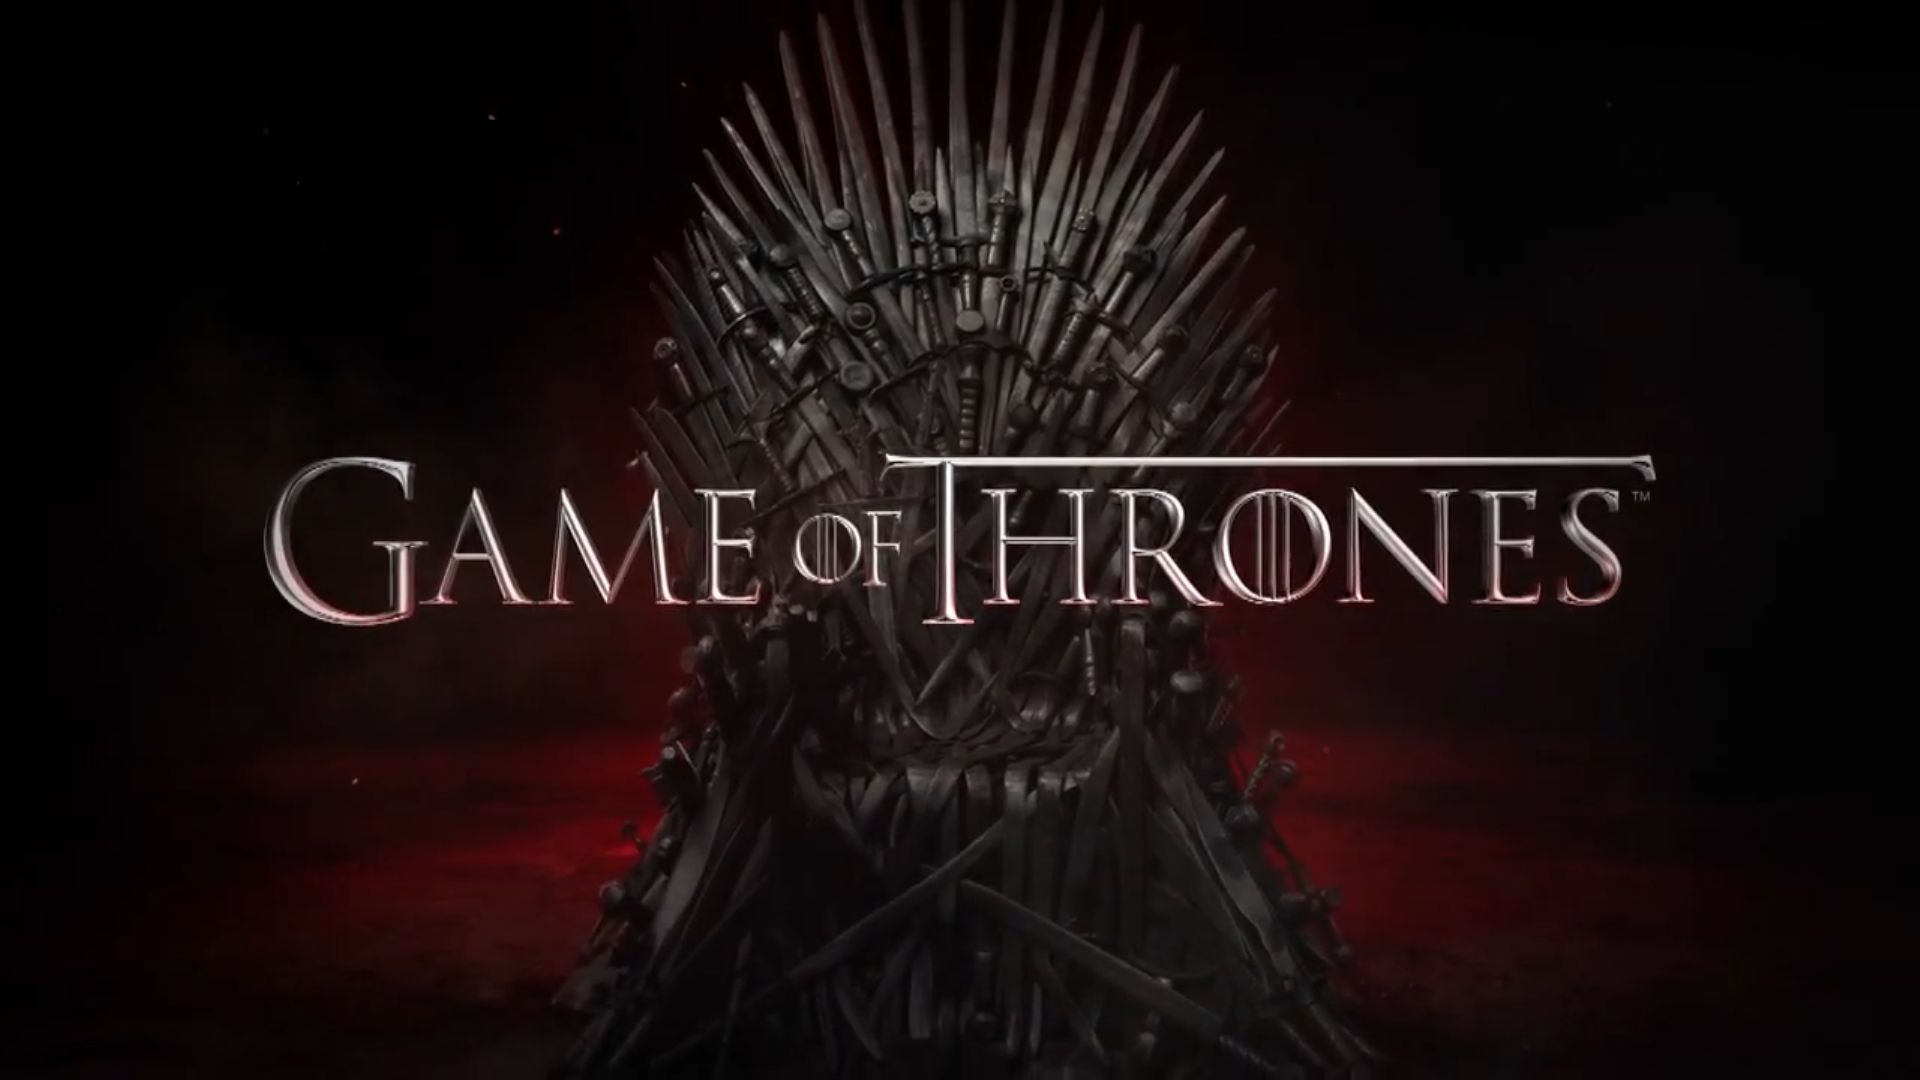 Affiche de la série Game of Thrones représentant le trône construit en armes blanches